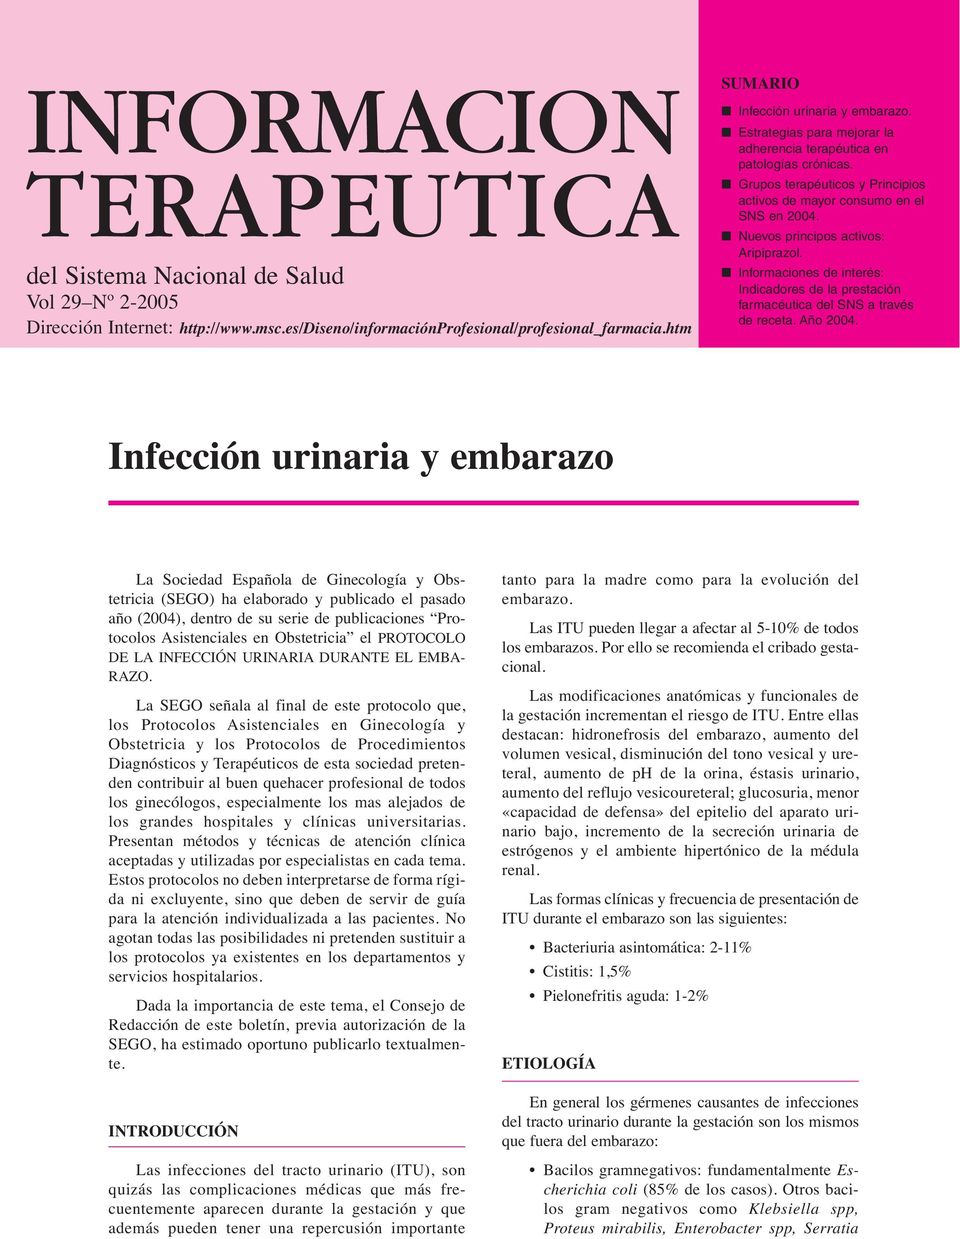 Nuevos principos activos: Aripiprazol. Informaciones de interés: Indicadores de la prestación farmacéutica del SNS a través de receta. Año 2004.